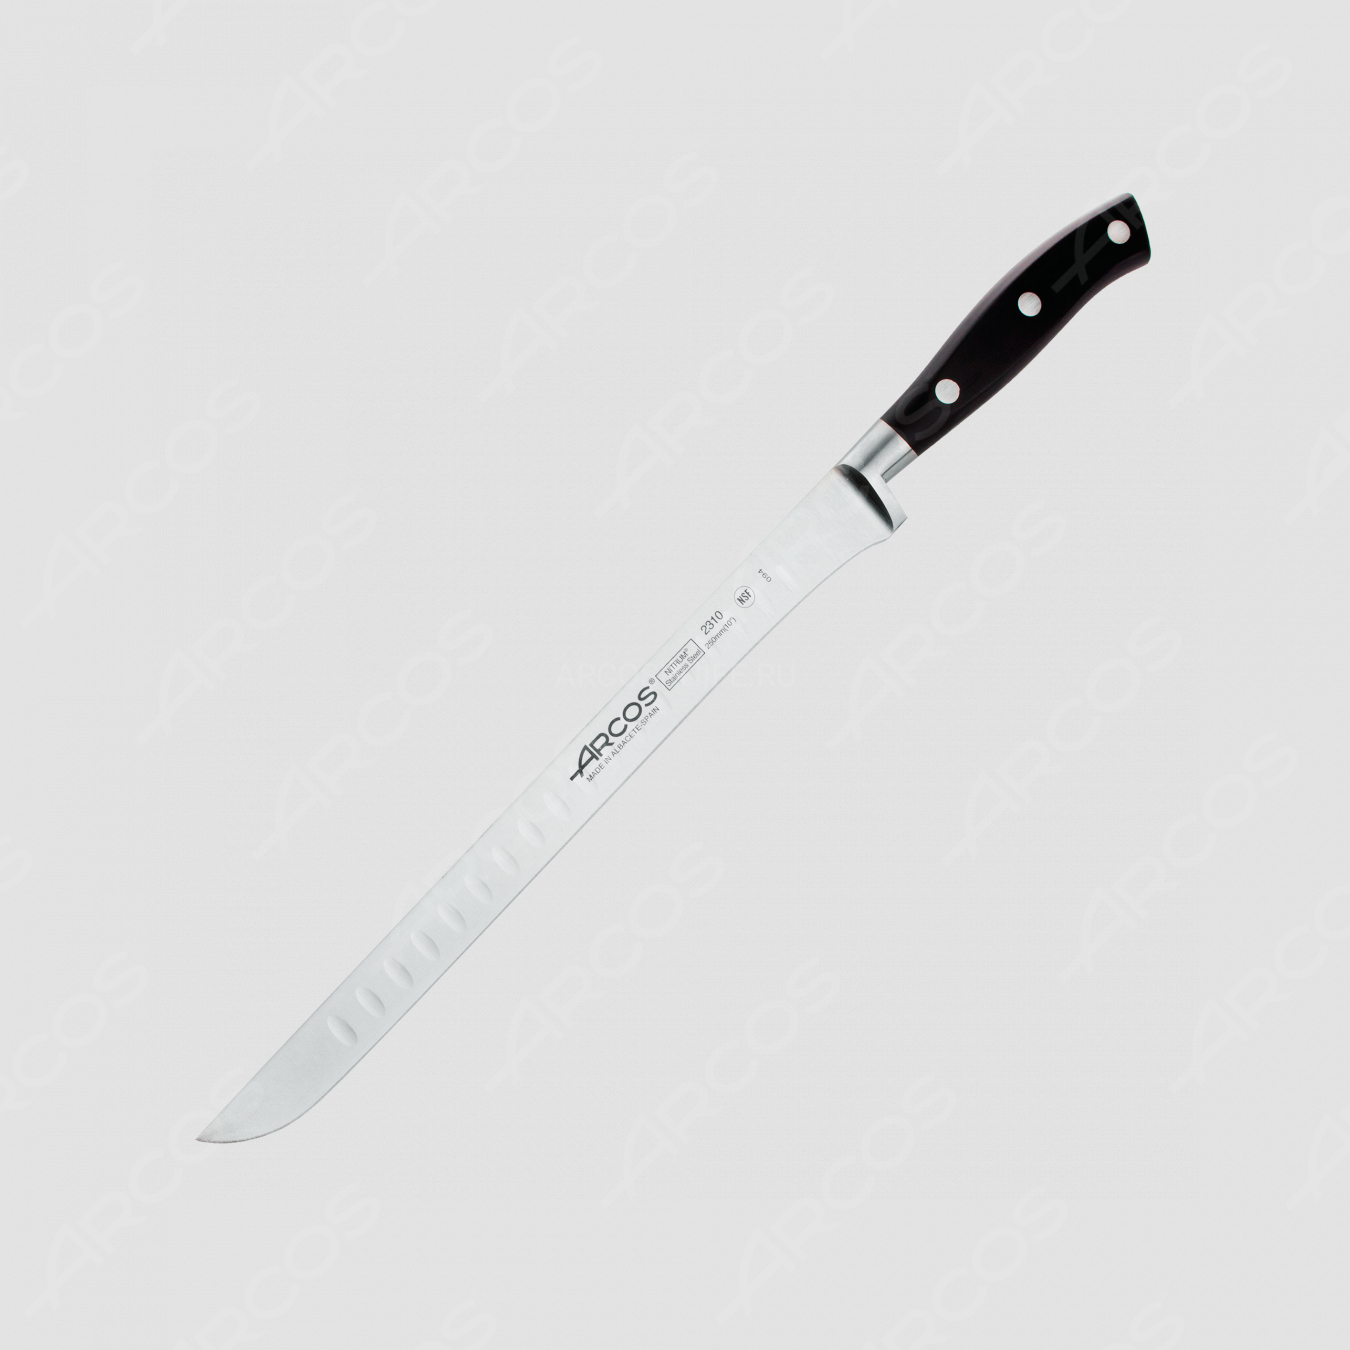 Нож кухонный для резки мяса 25 см, серия Riviera, ARCOS, Испания